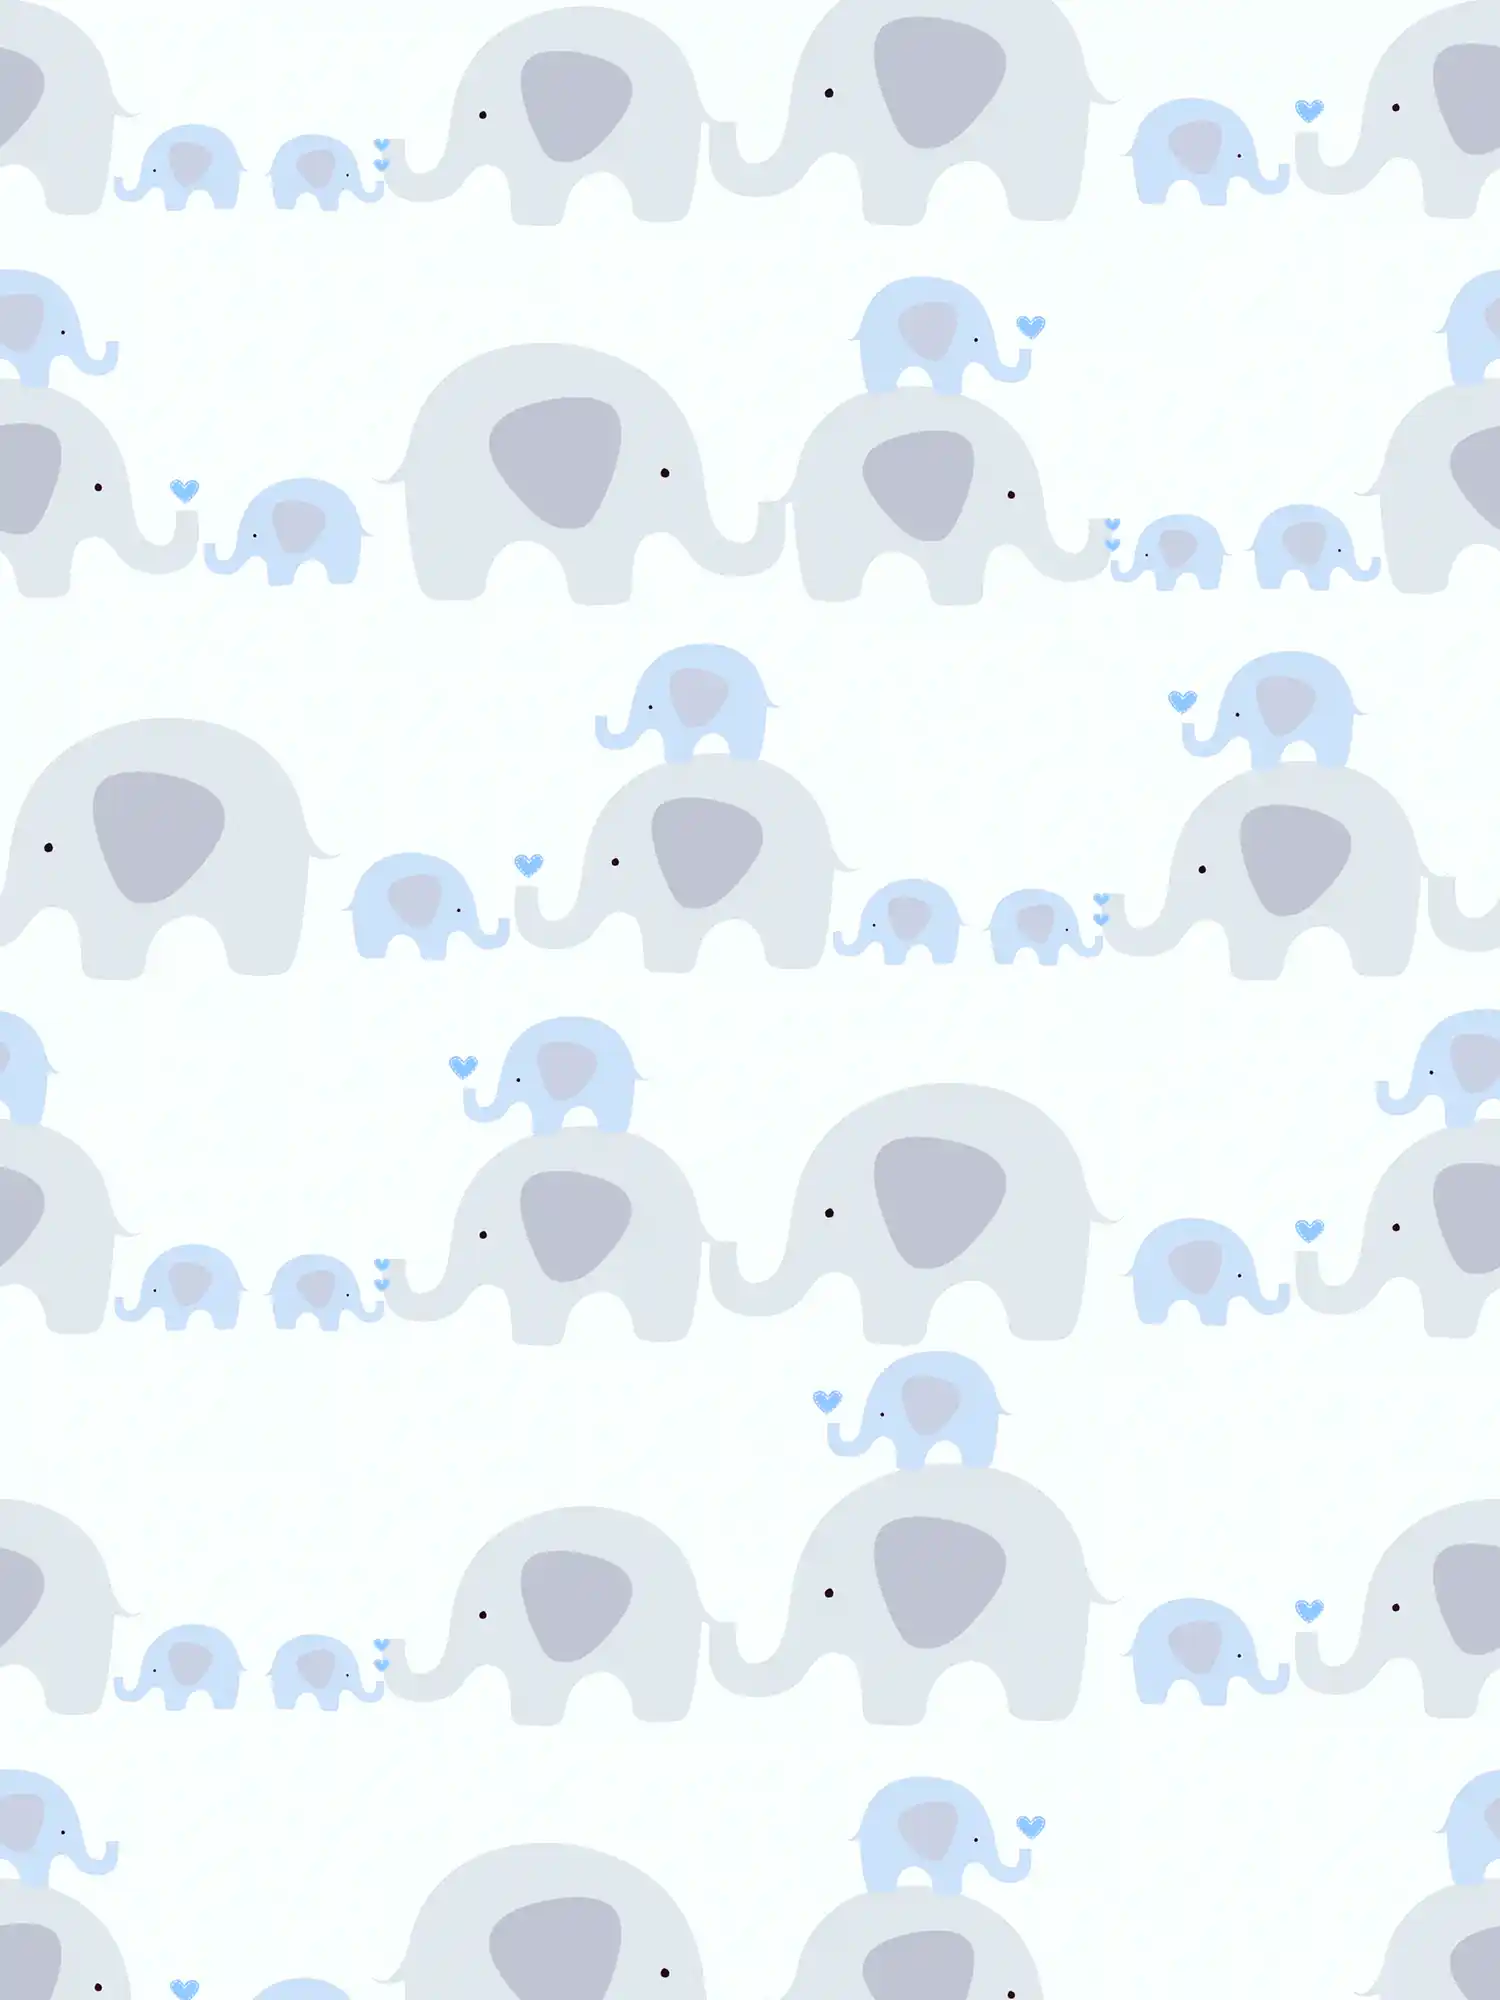 Kinderkamer behang jongen olifanten - blauw, grijs, wit
